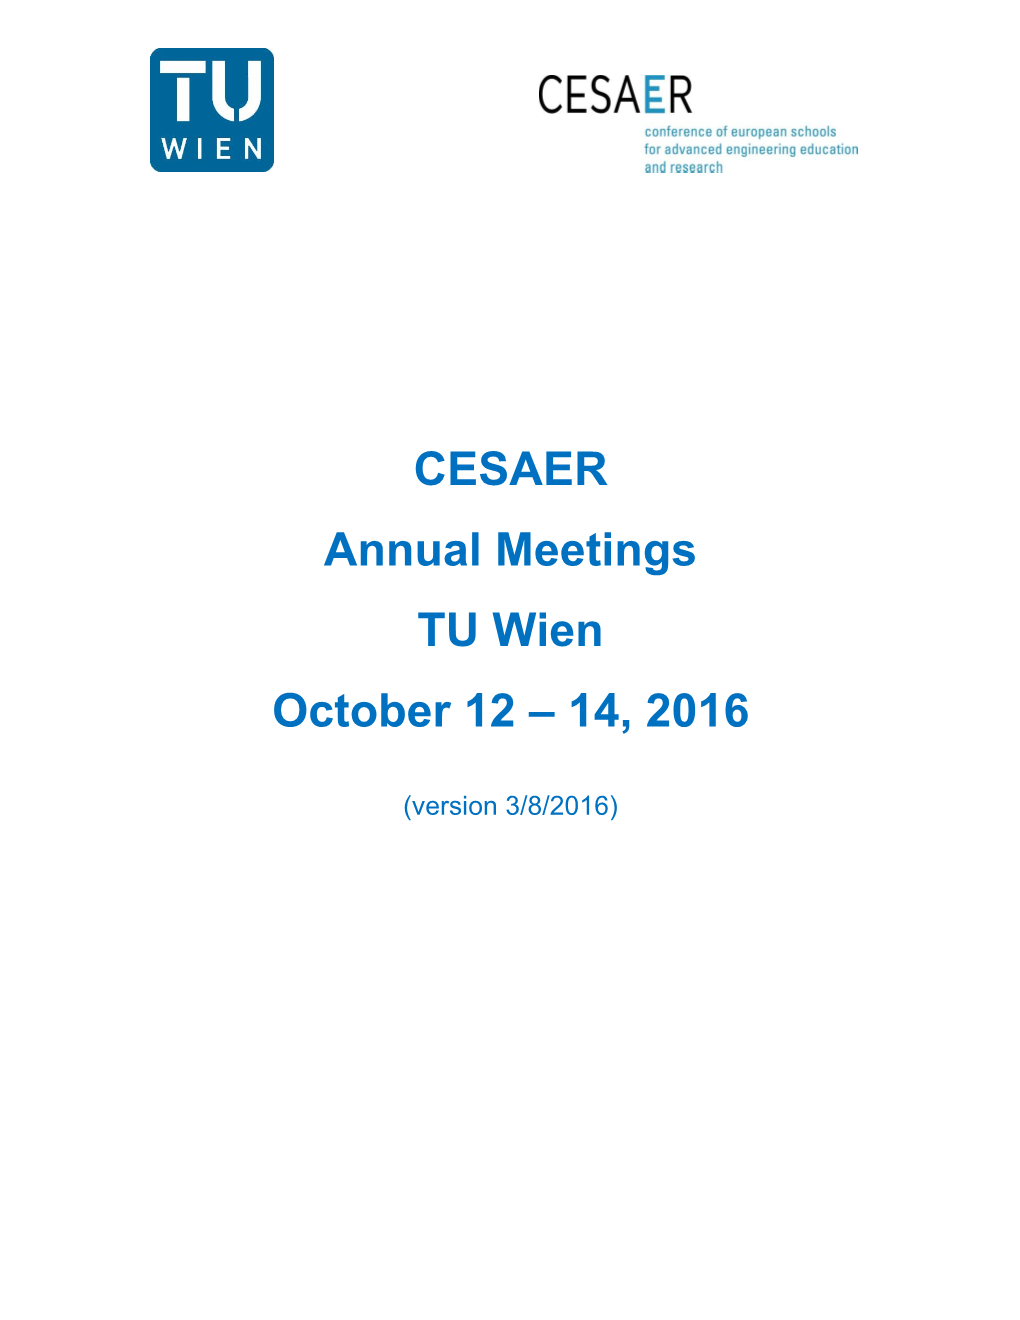 CESAER Annual Meetings TU Wien October 12 – 14, 2016